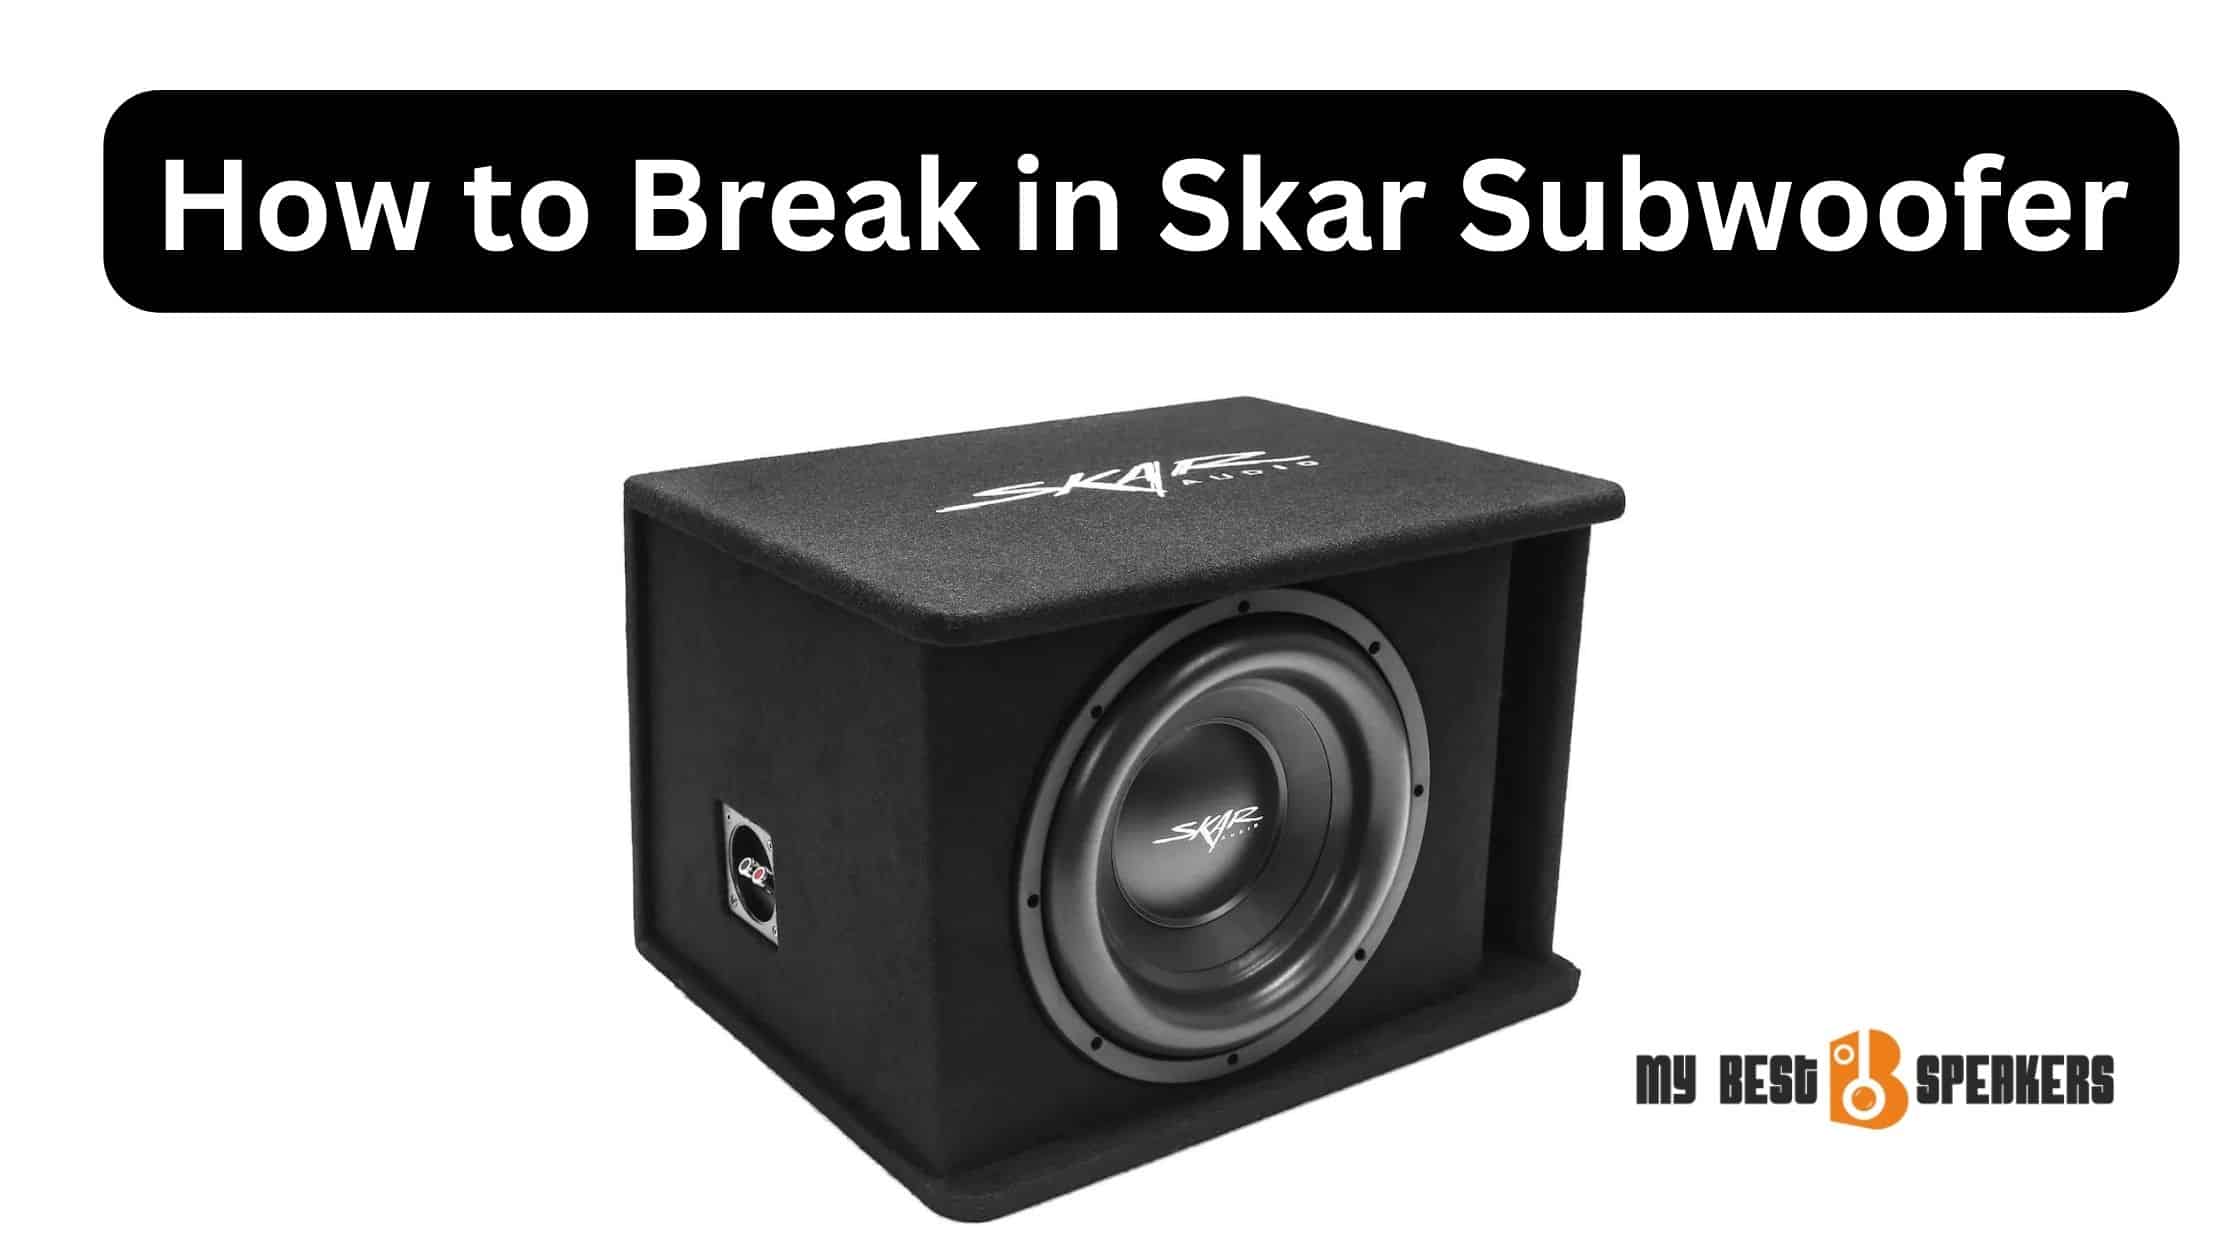 How to Break in Skar Subwoofer